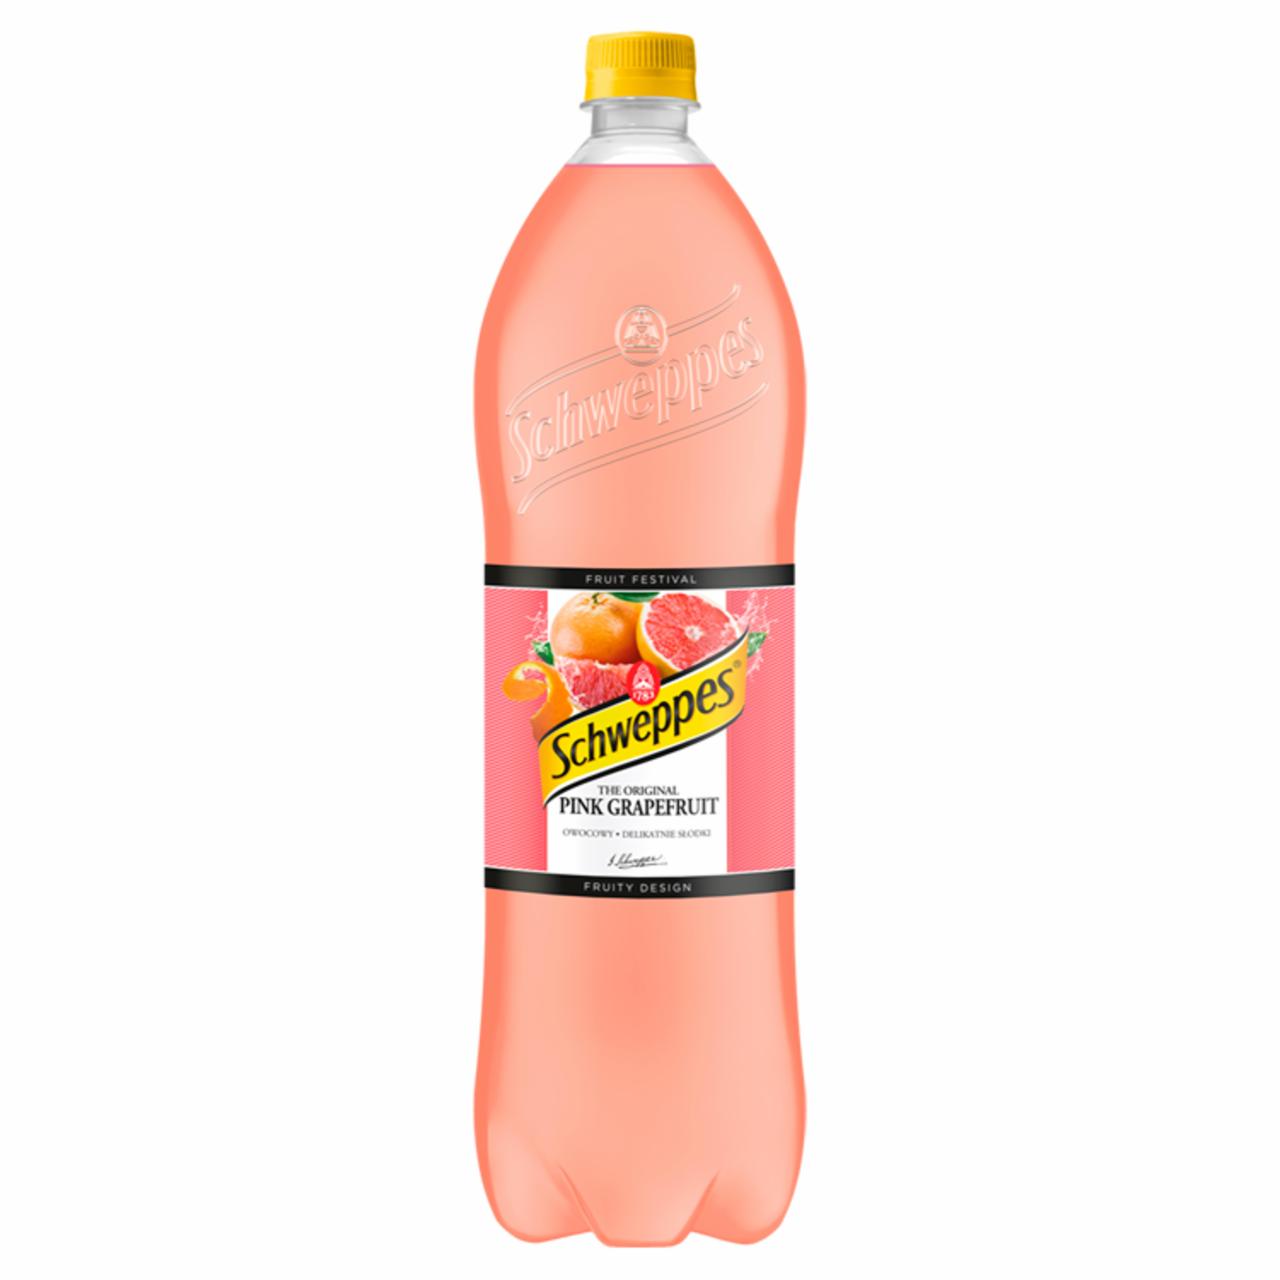 Zdjęcia - Schweppes Pink Grapefruit Napój gazowany o smaku czerwonego grapefruita0,9 l